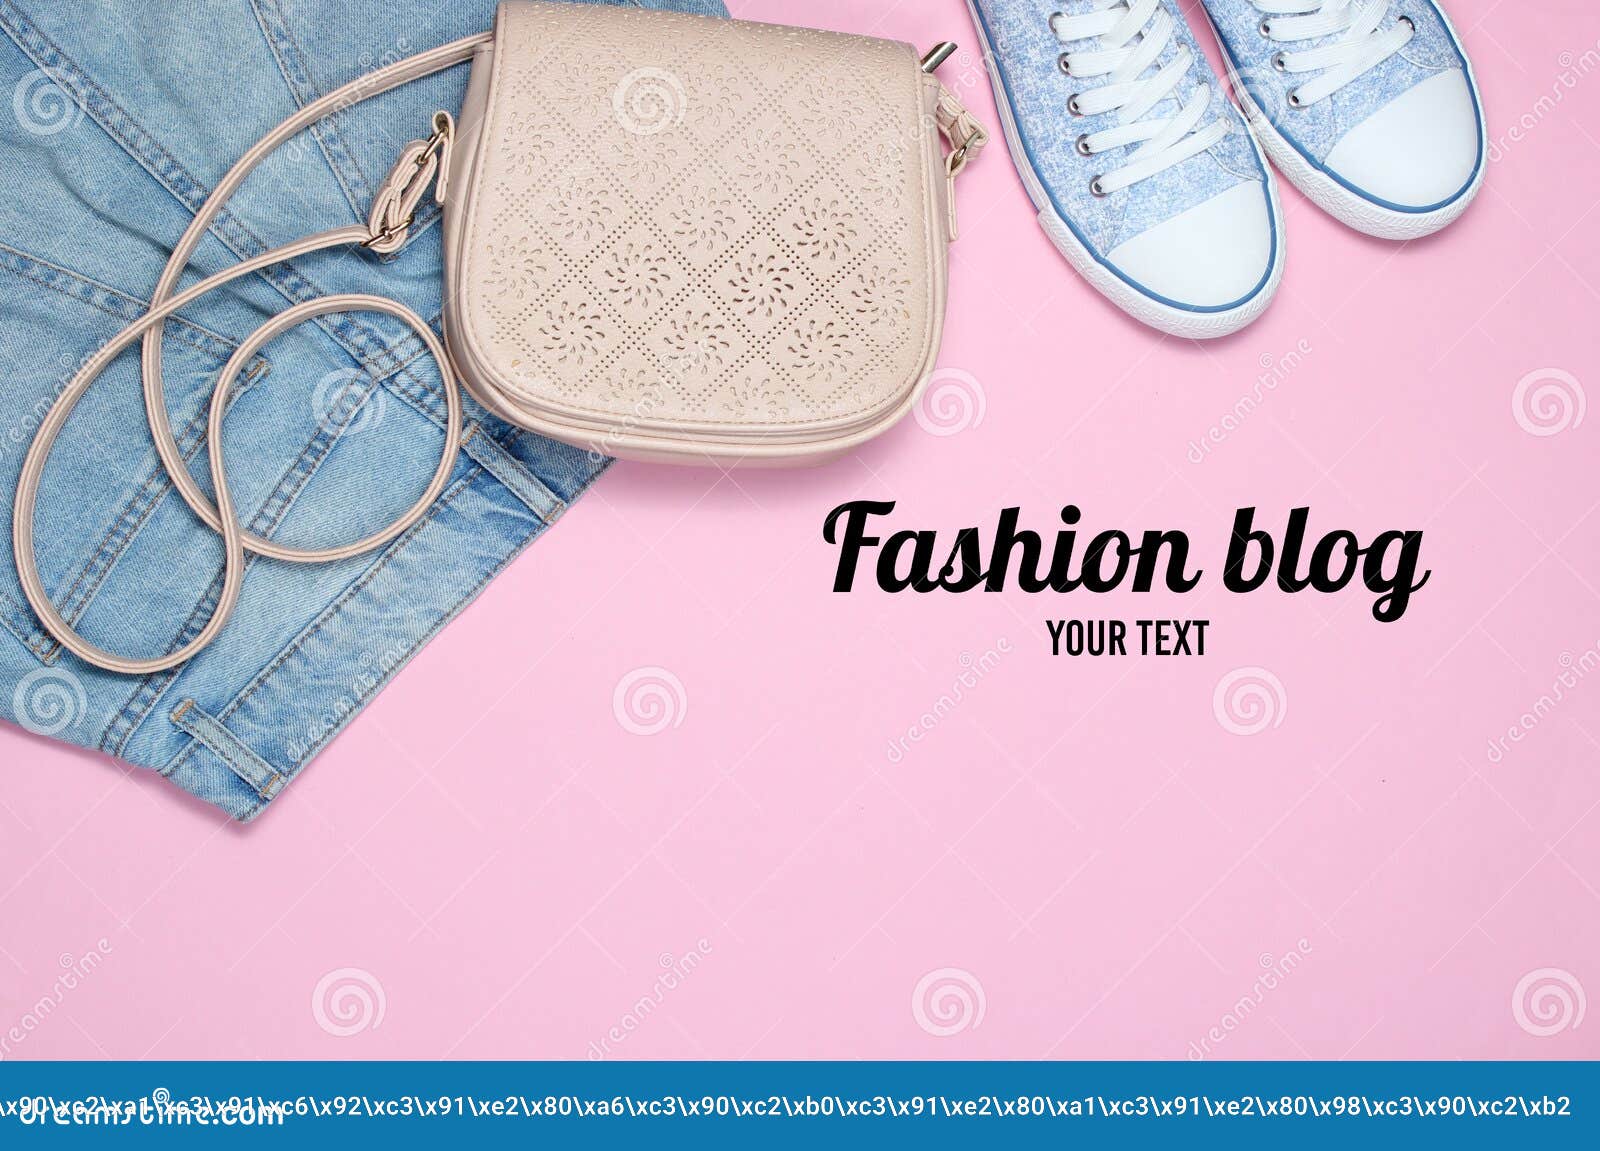 Fashion Blog. Fashionable Women& X27;s Clothing, Shoes Stock Image ...